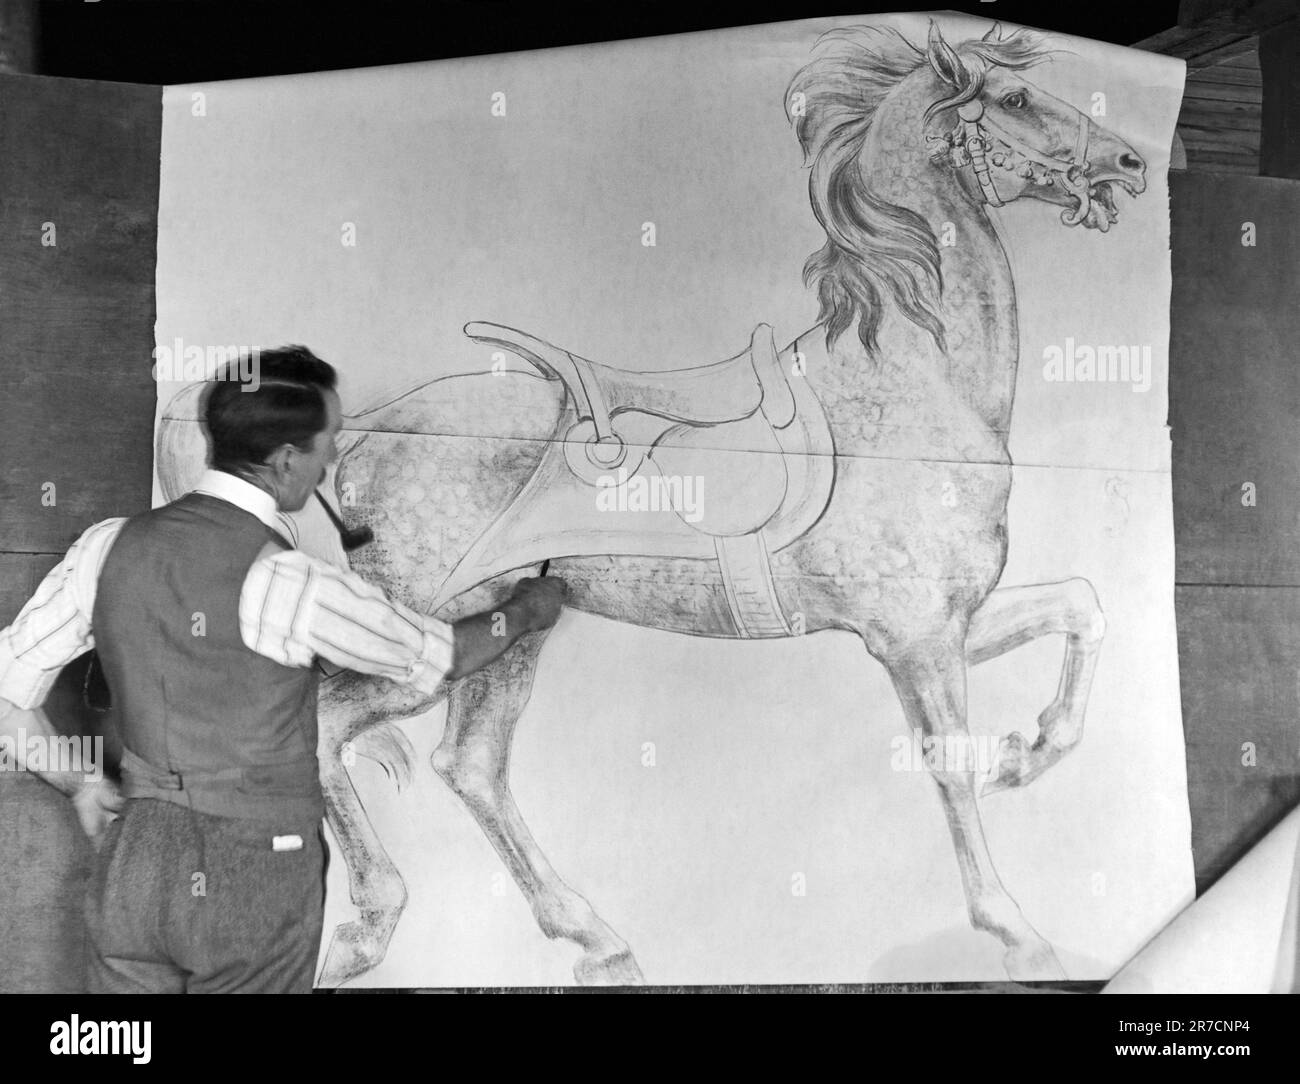 Philadelphie, Pennsylvanie : c. 1915. Le designer Daniel Muller travaille dans un atelier de carrousel d'animaux à l'usine de Dentzel dans la section Germantown de Philadelphie. Ici, il dessine une esquisse d'une figure de cheval pleine grandeur pour un carrousel. Banque D'Images